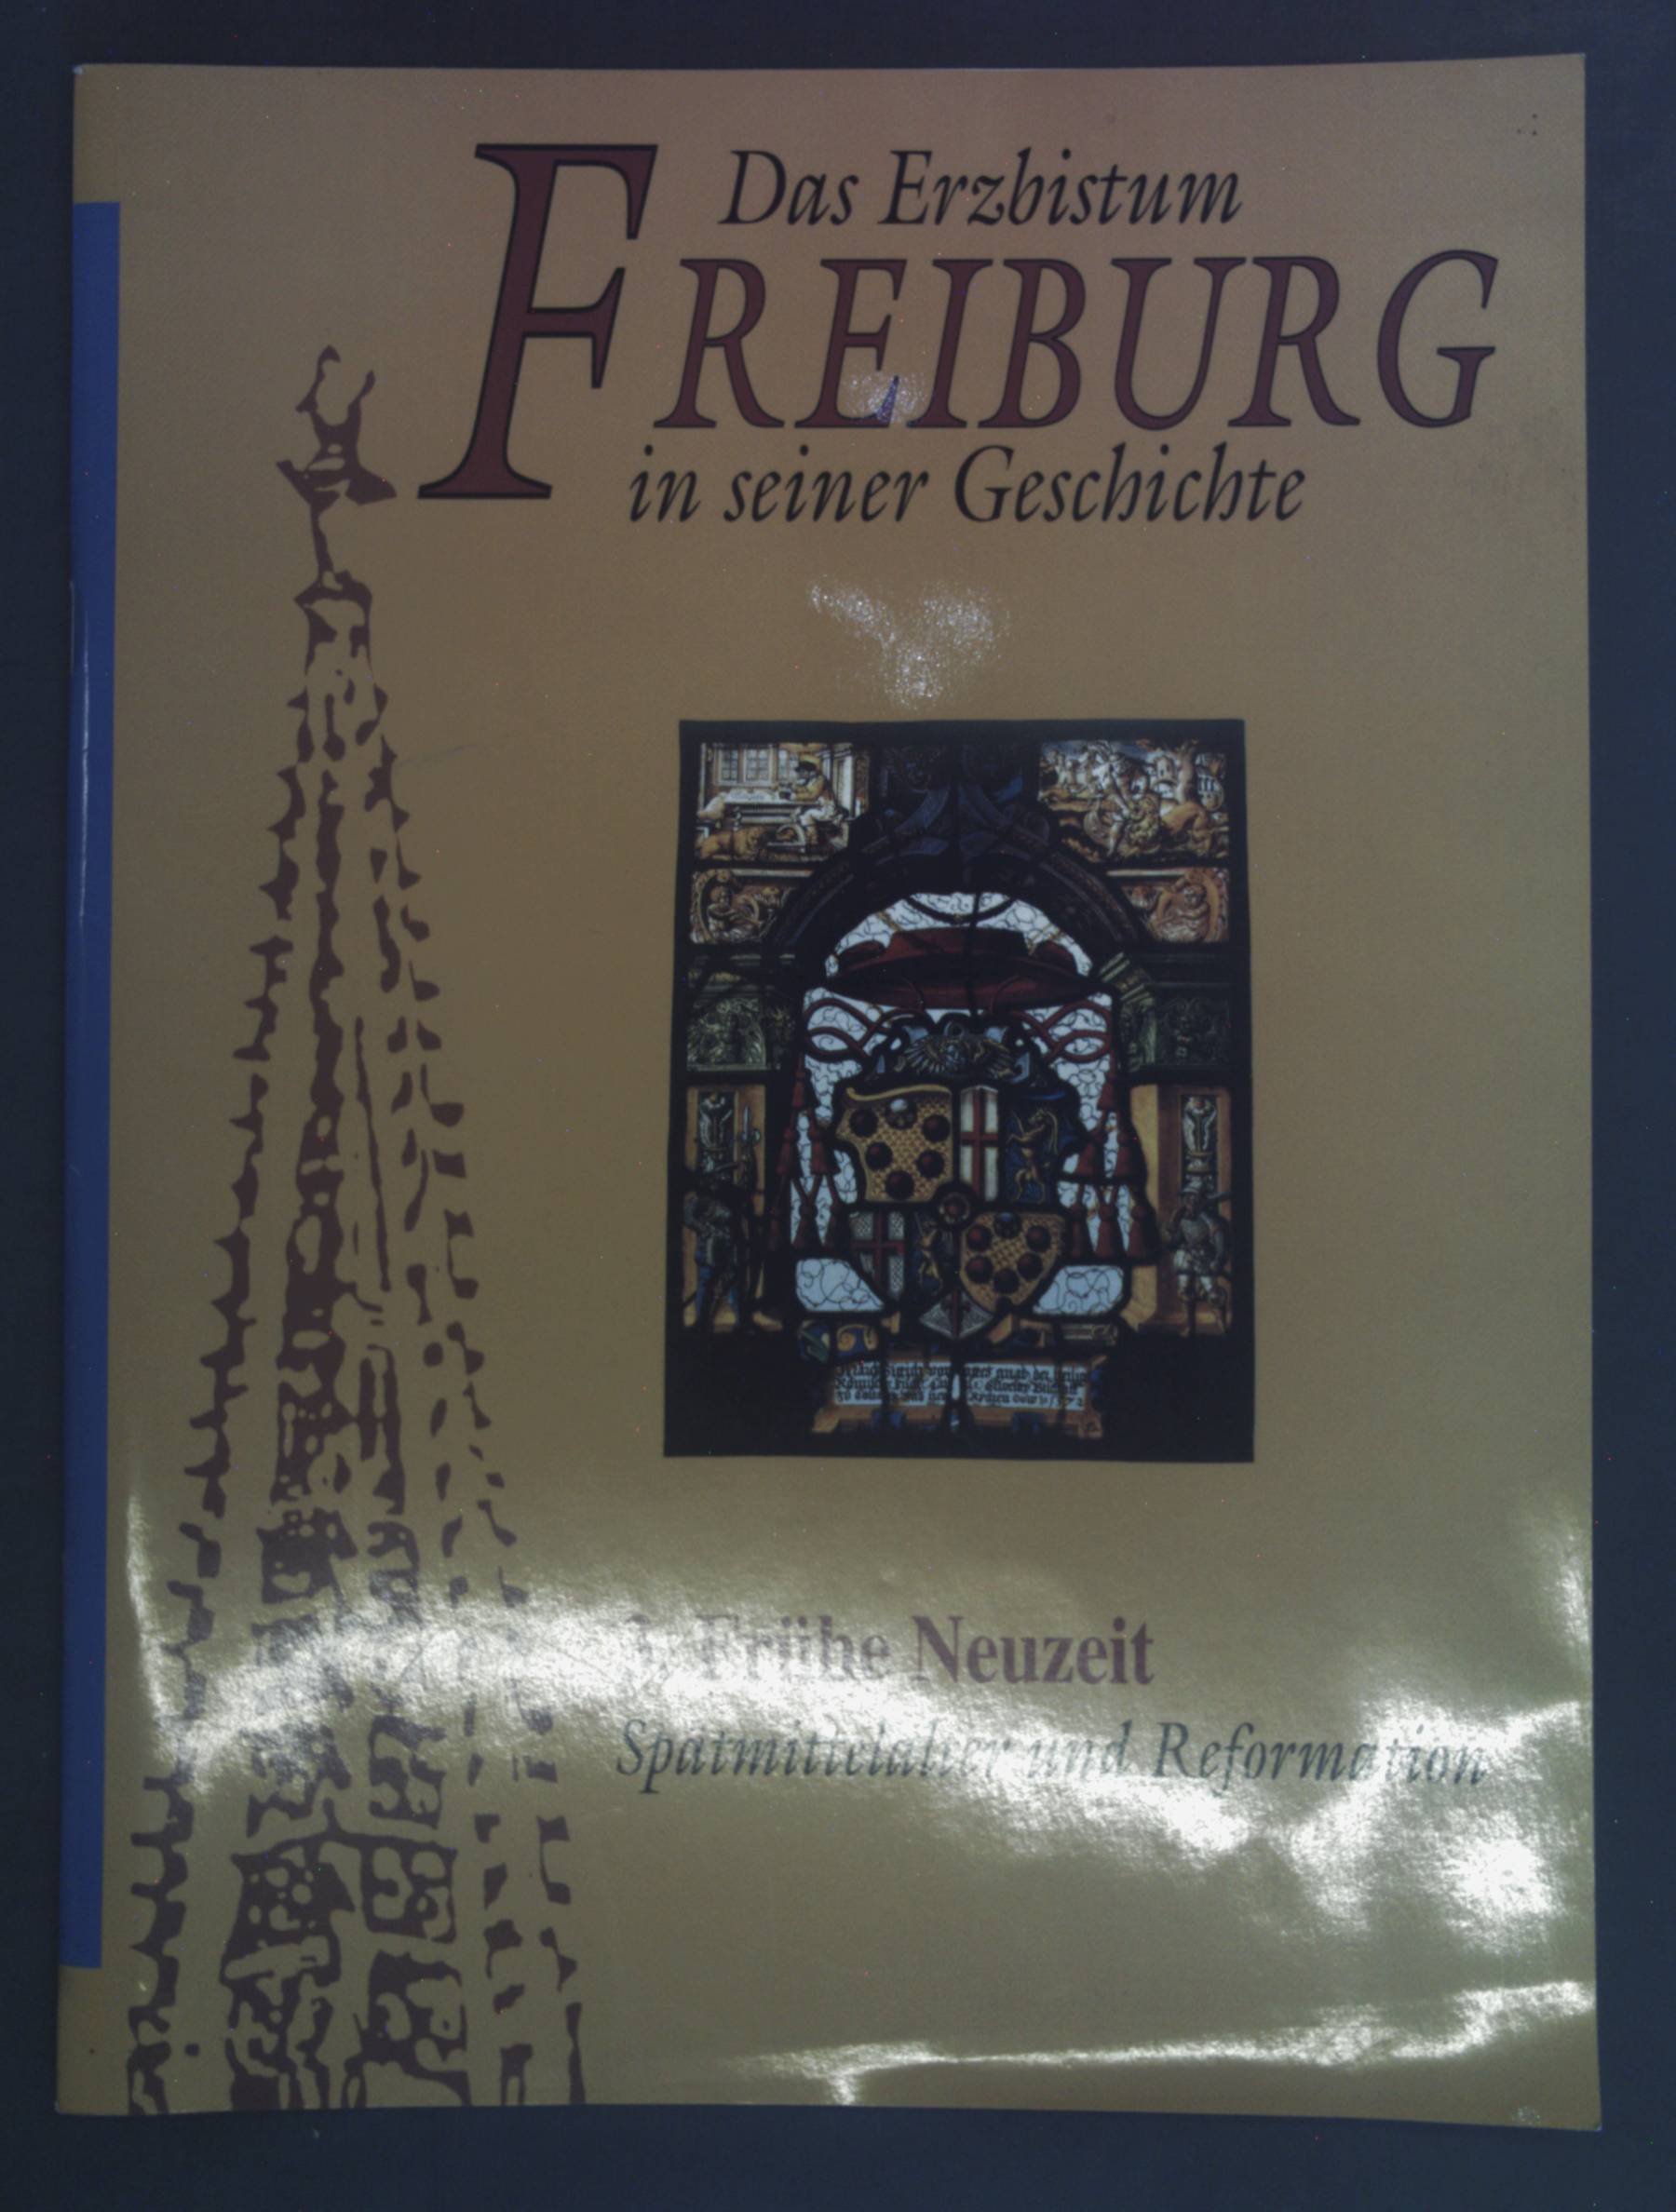 Das Erzbistum Freiburg in seiner Geschichte, Heft 3: Frühe Neuzeit, Spätmittelalter und Reformation - Smolinsky, Prof. Dr. Heribert